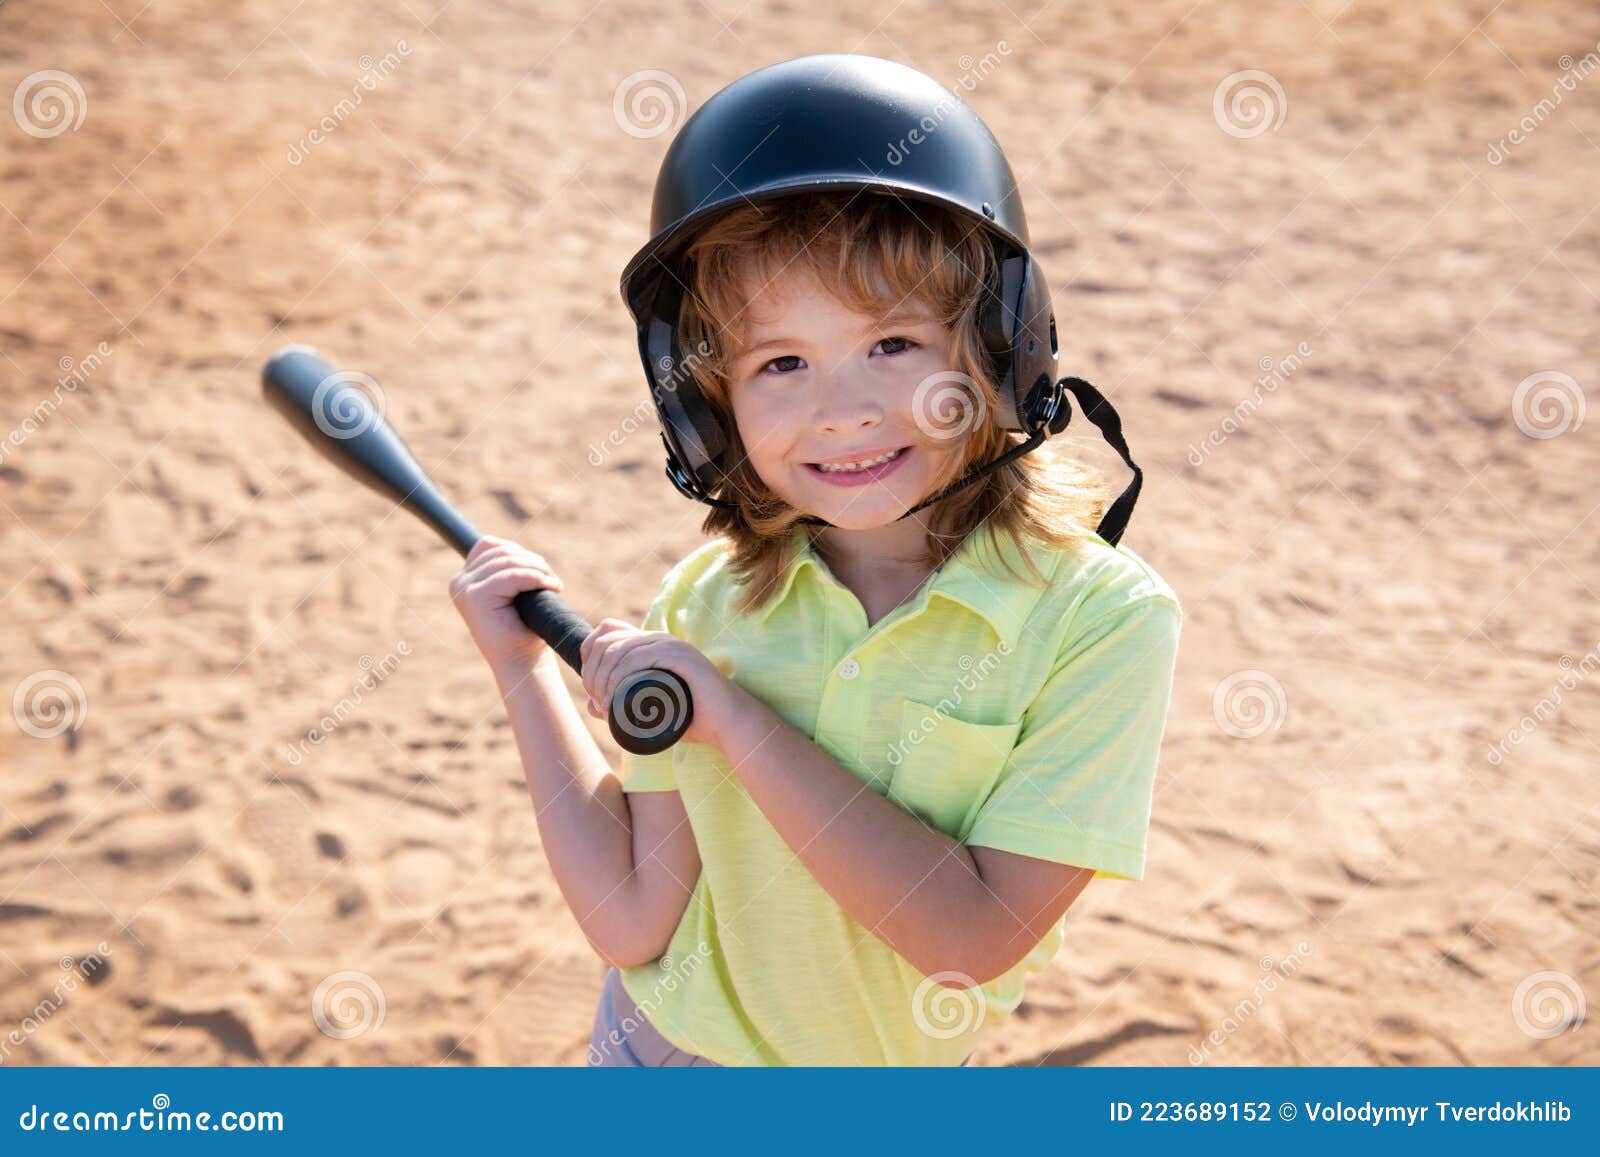 grillen handtekening waar dan ook Grappig Kind Met Knuppel in Een Honkbalwedstrijd. Kinderportret Sluiten.  Stock Foto - Image of knuppel, waterkruik: 223689152